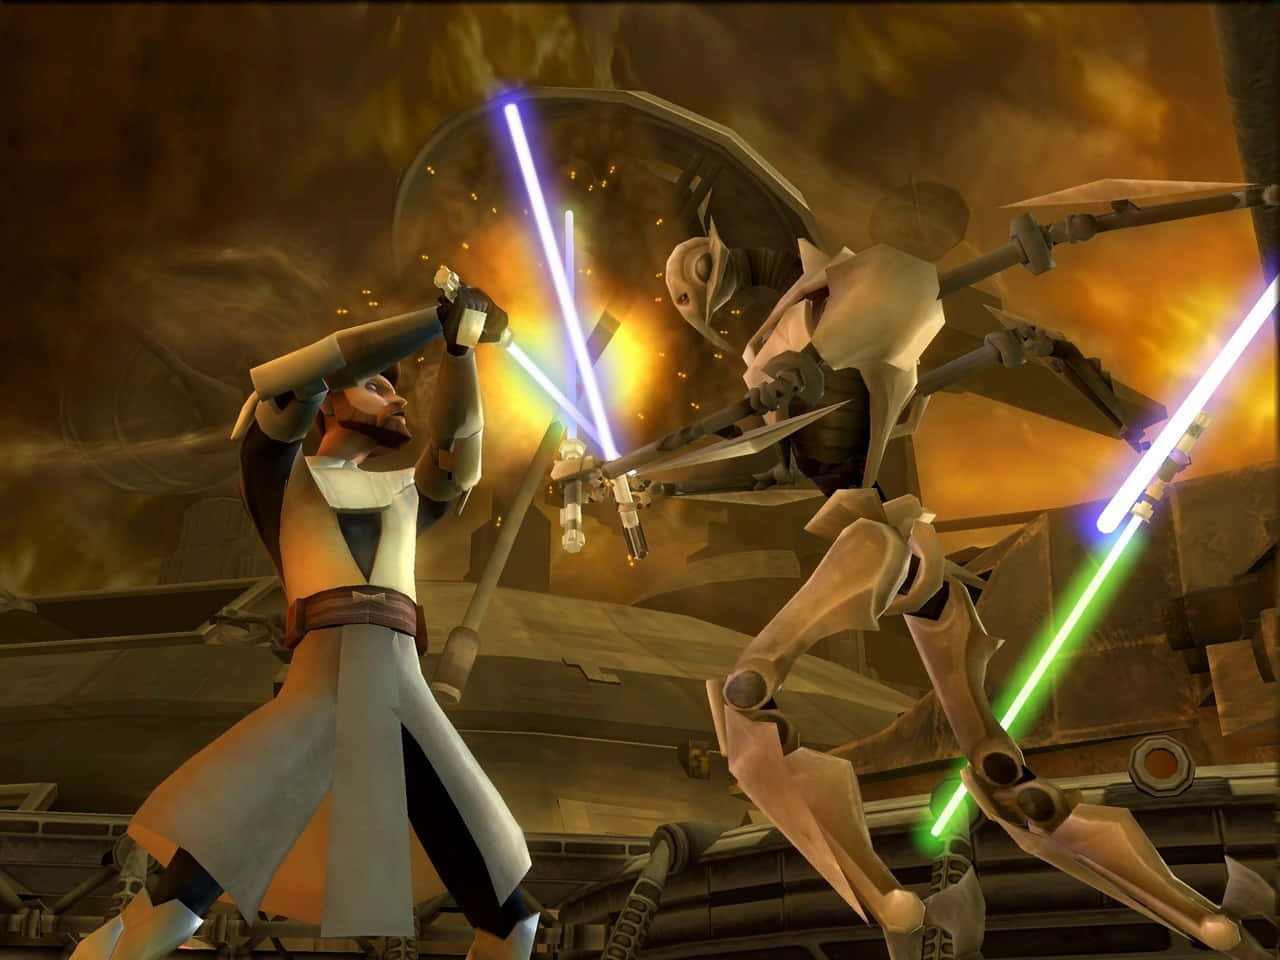 Darth Vader vs Luke Skywalker in a Lightsaber Duel Wallpaper